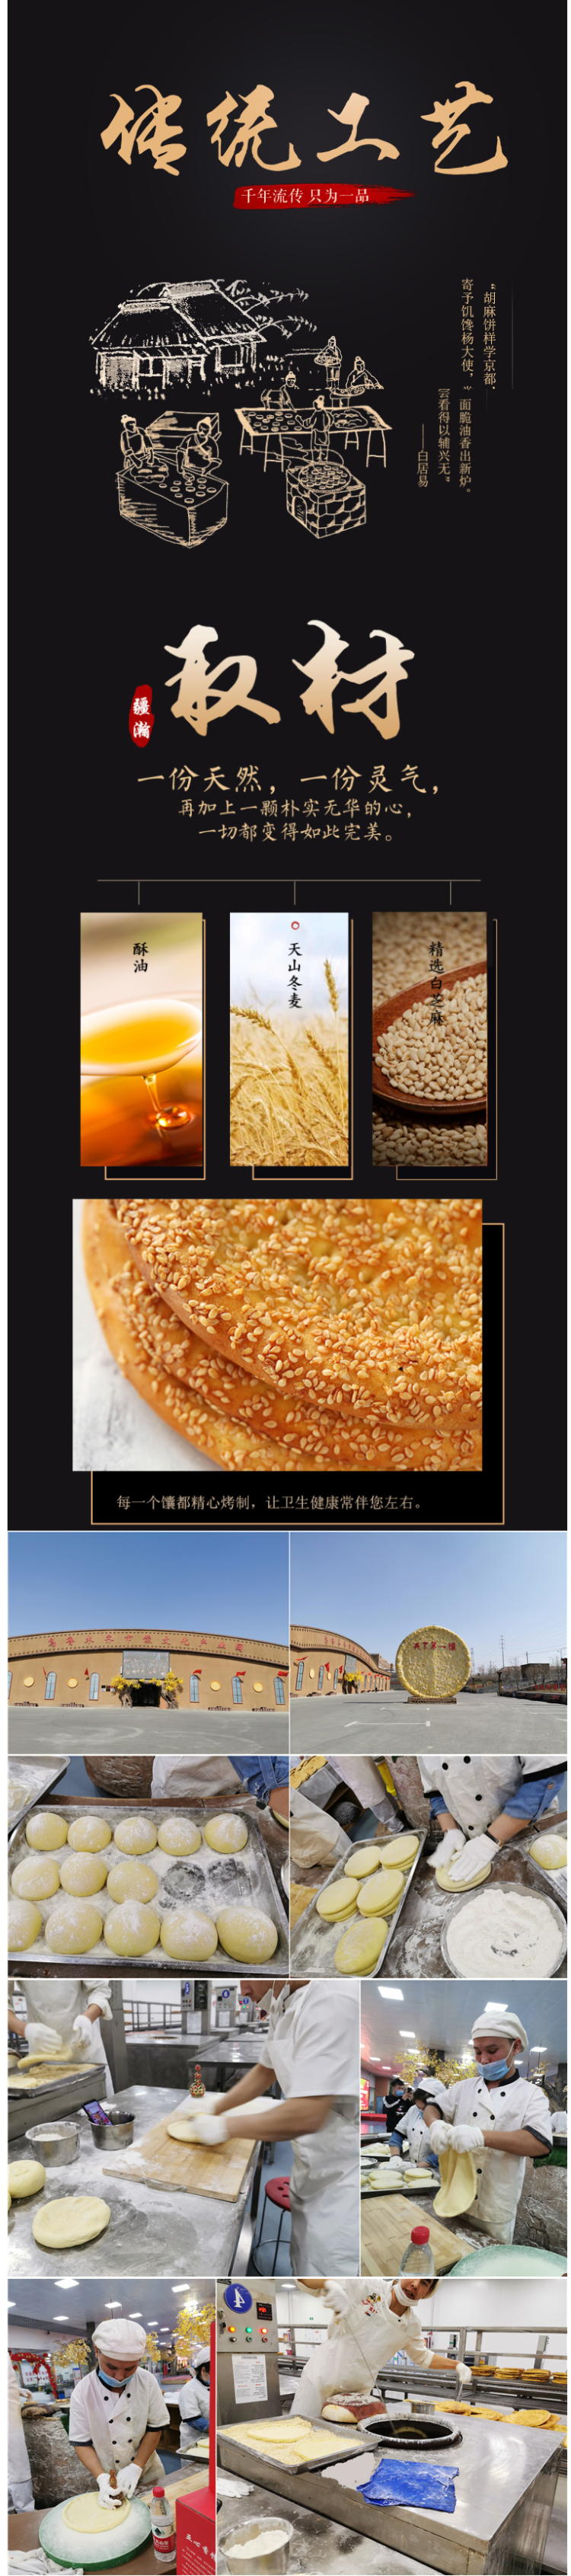 新疆传统手工美食 芝麻油酥馕/皮牙子油酥馕 300g*3包 图2